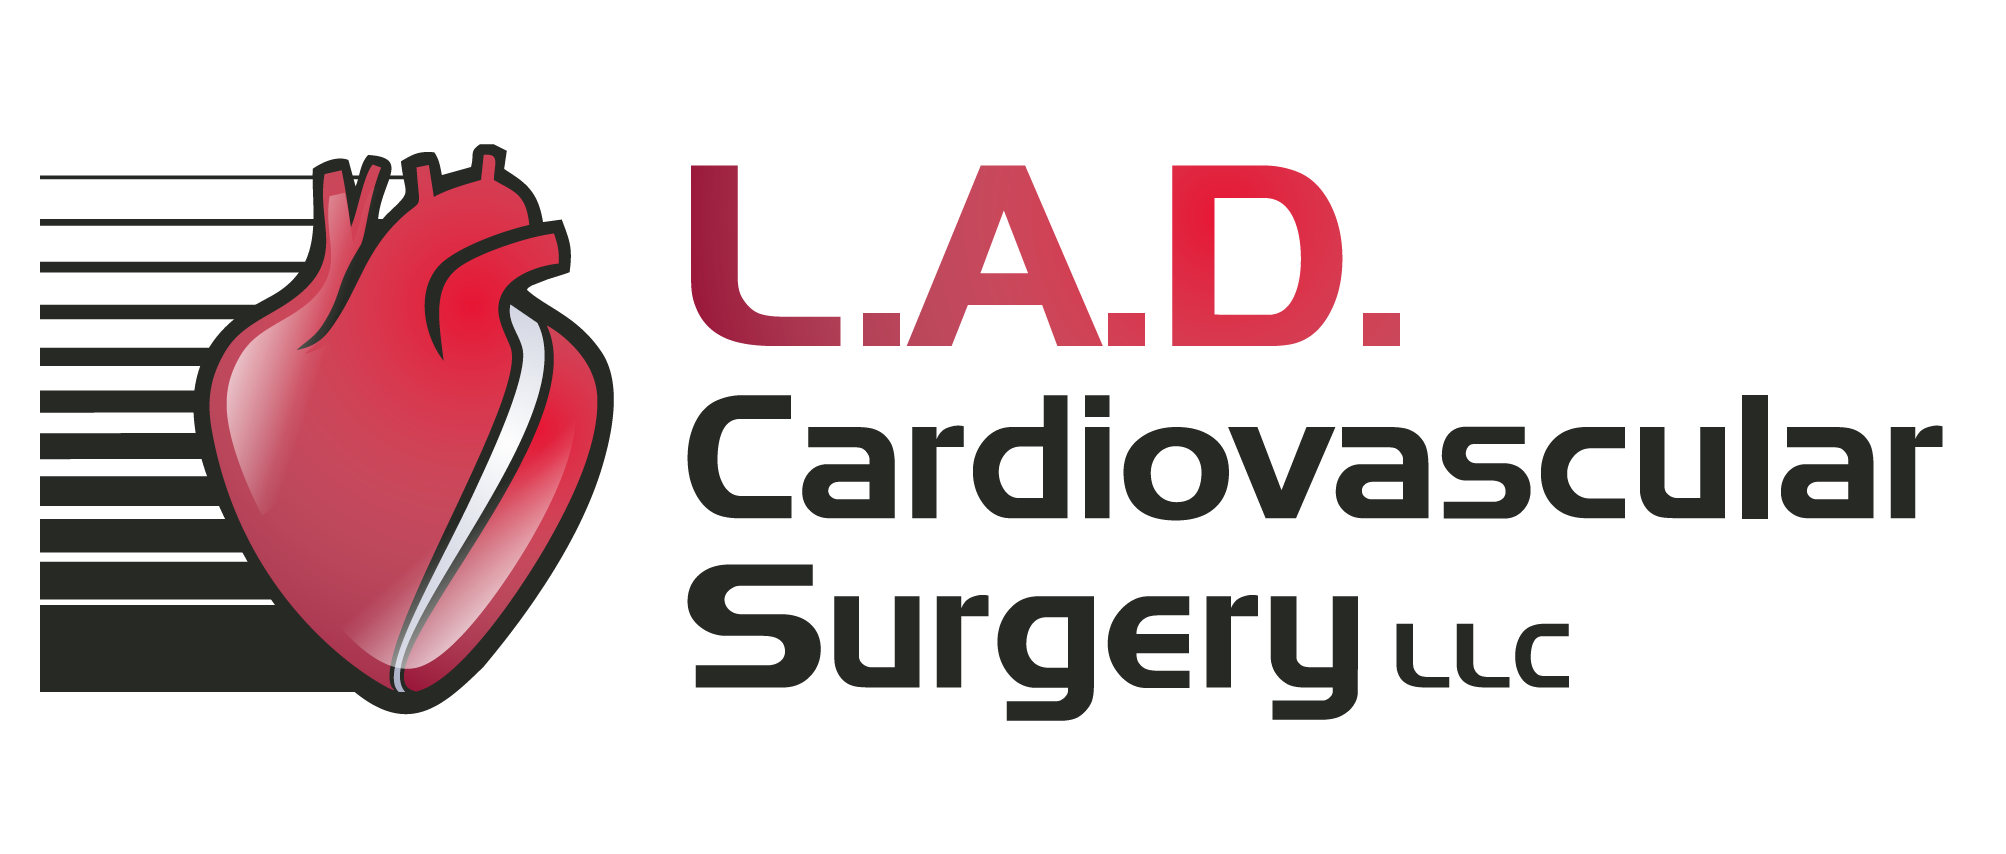 L.a.d cardiovascular surgery, llc